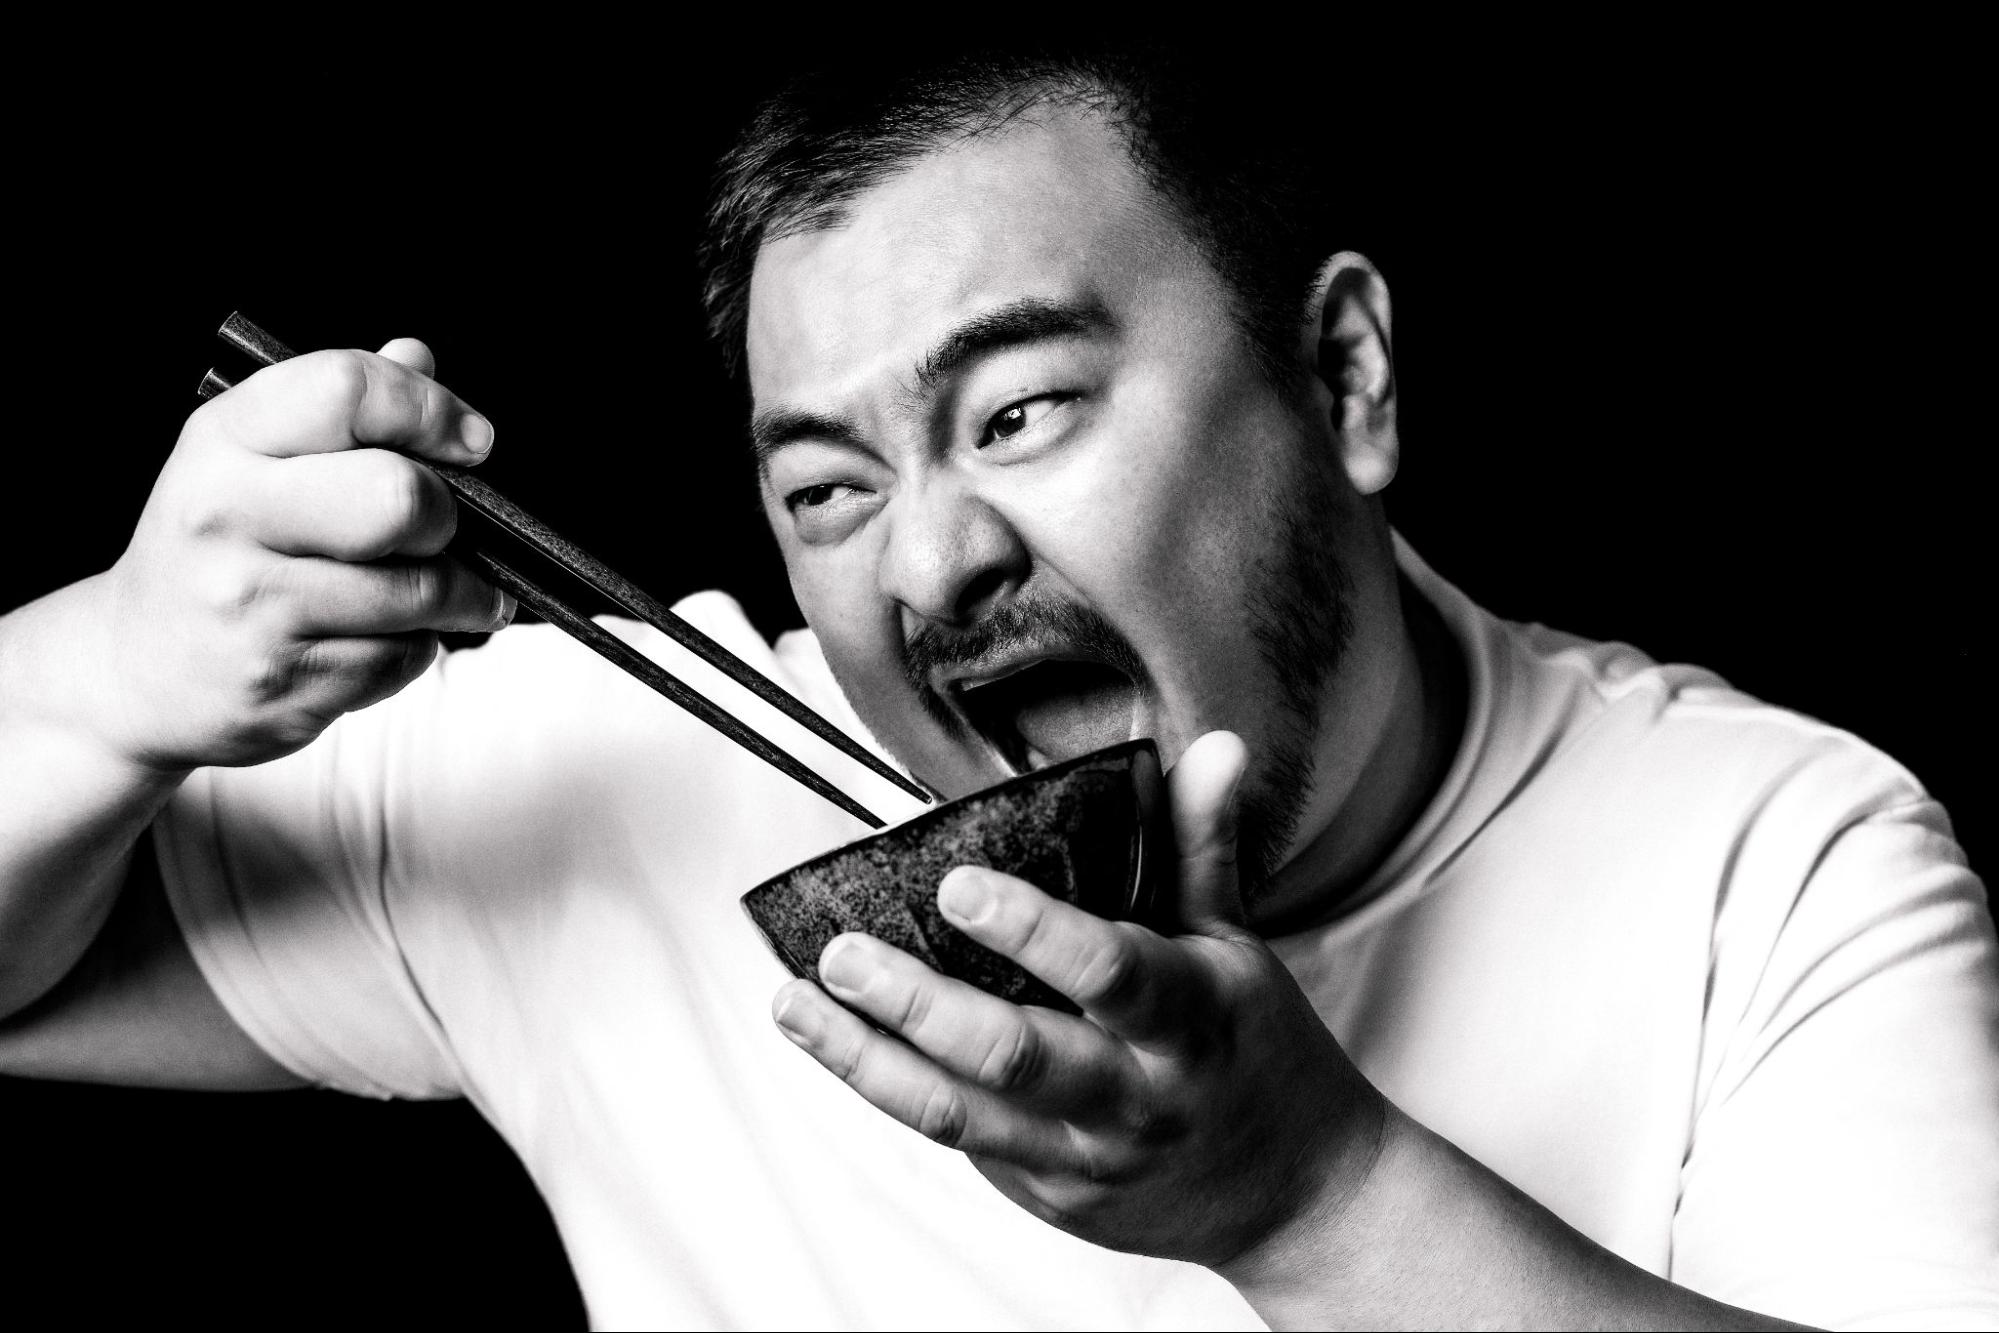 「食のAppleを目指す」──ミシュランシェフ・鳥羽周作氏が考える、料理業界とシェフのアップデート